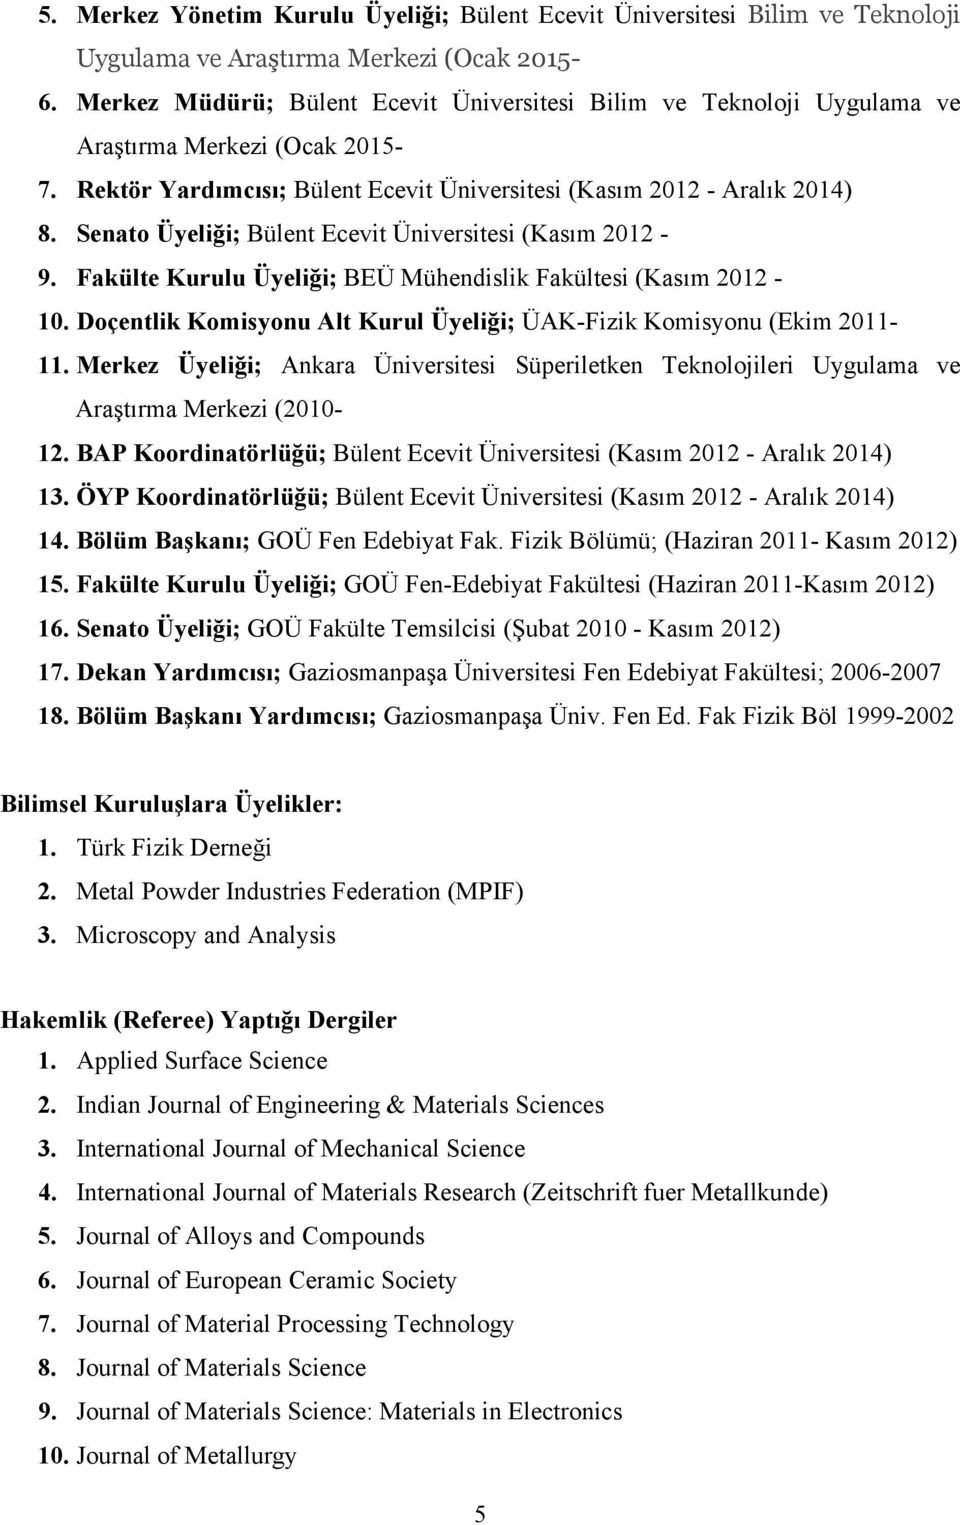 Senato Üyeliği; Bülent Ecevit Üniversitesi (Kasım 2012-9. Fakülte Kurulu Üyeliği; BEÜ Mühendislik Fakültesi (Kasım 2012-10. Doçentlik Komisyonu Alt Kurul Üyeliği; ÜAK-Fizik Komisyonu (Ekim 2011-11.